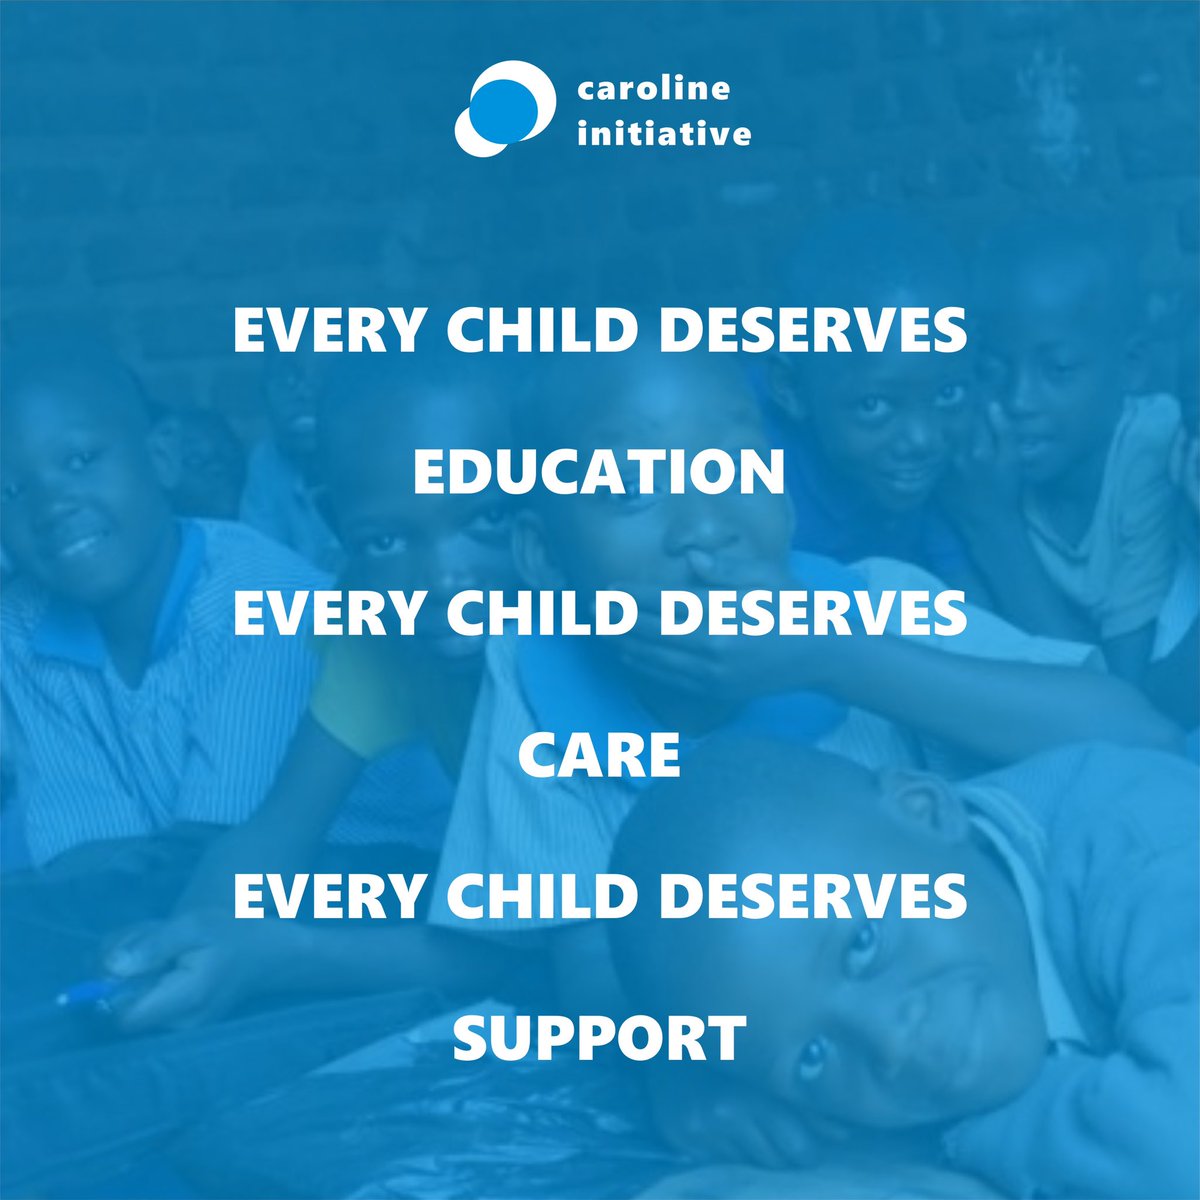 Together, let’s create a world for the children.

#CarolineInitiative #ChildEmpowerment #ChildWelfarism
#ChildAid #EmpowerChildren #SupportKids
#DonateForKids #InstaCharity #ChildRights #futureleaders